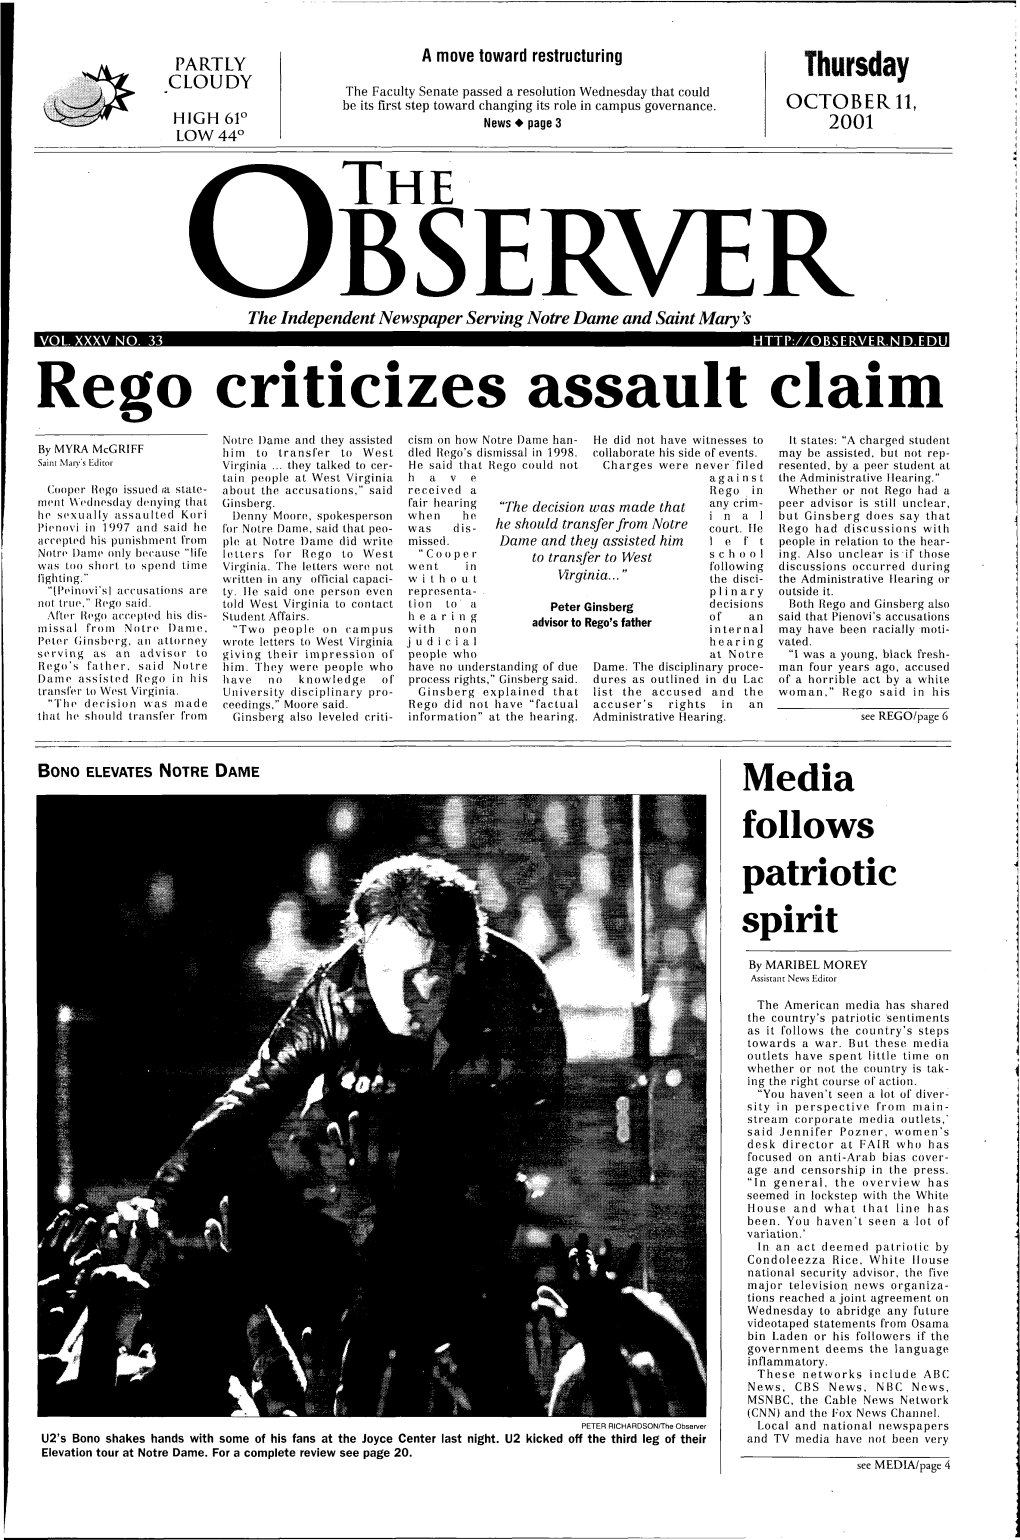 Rego Criticizes Assault Claim